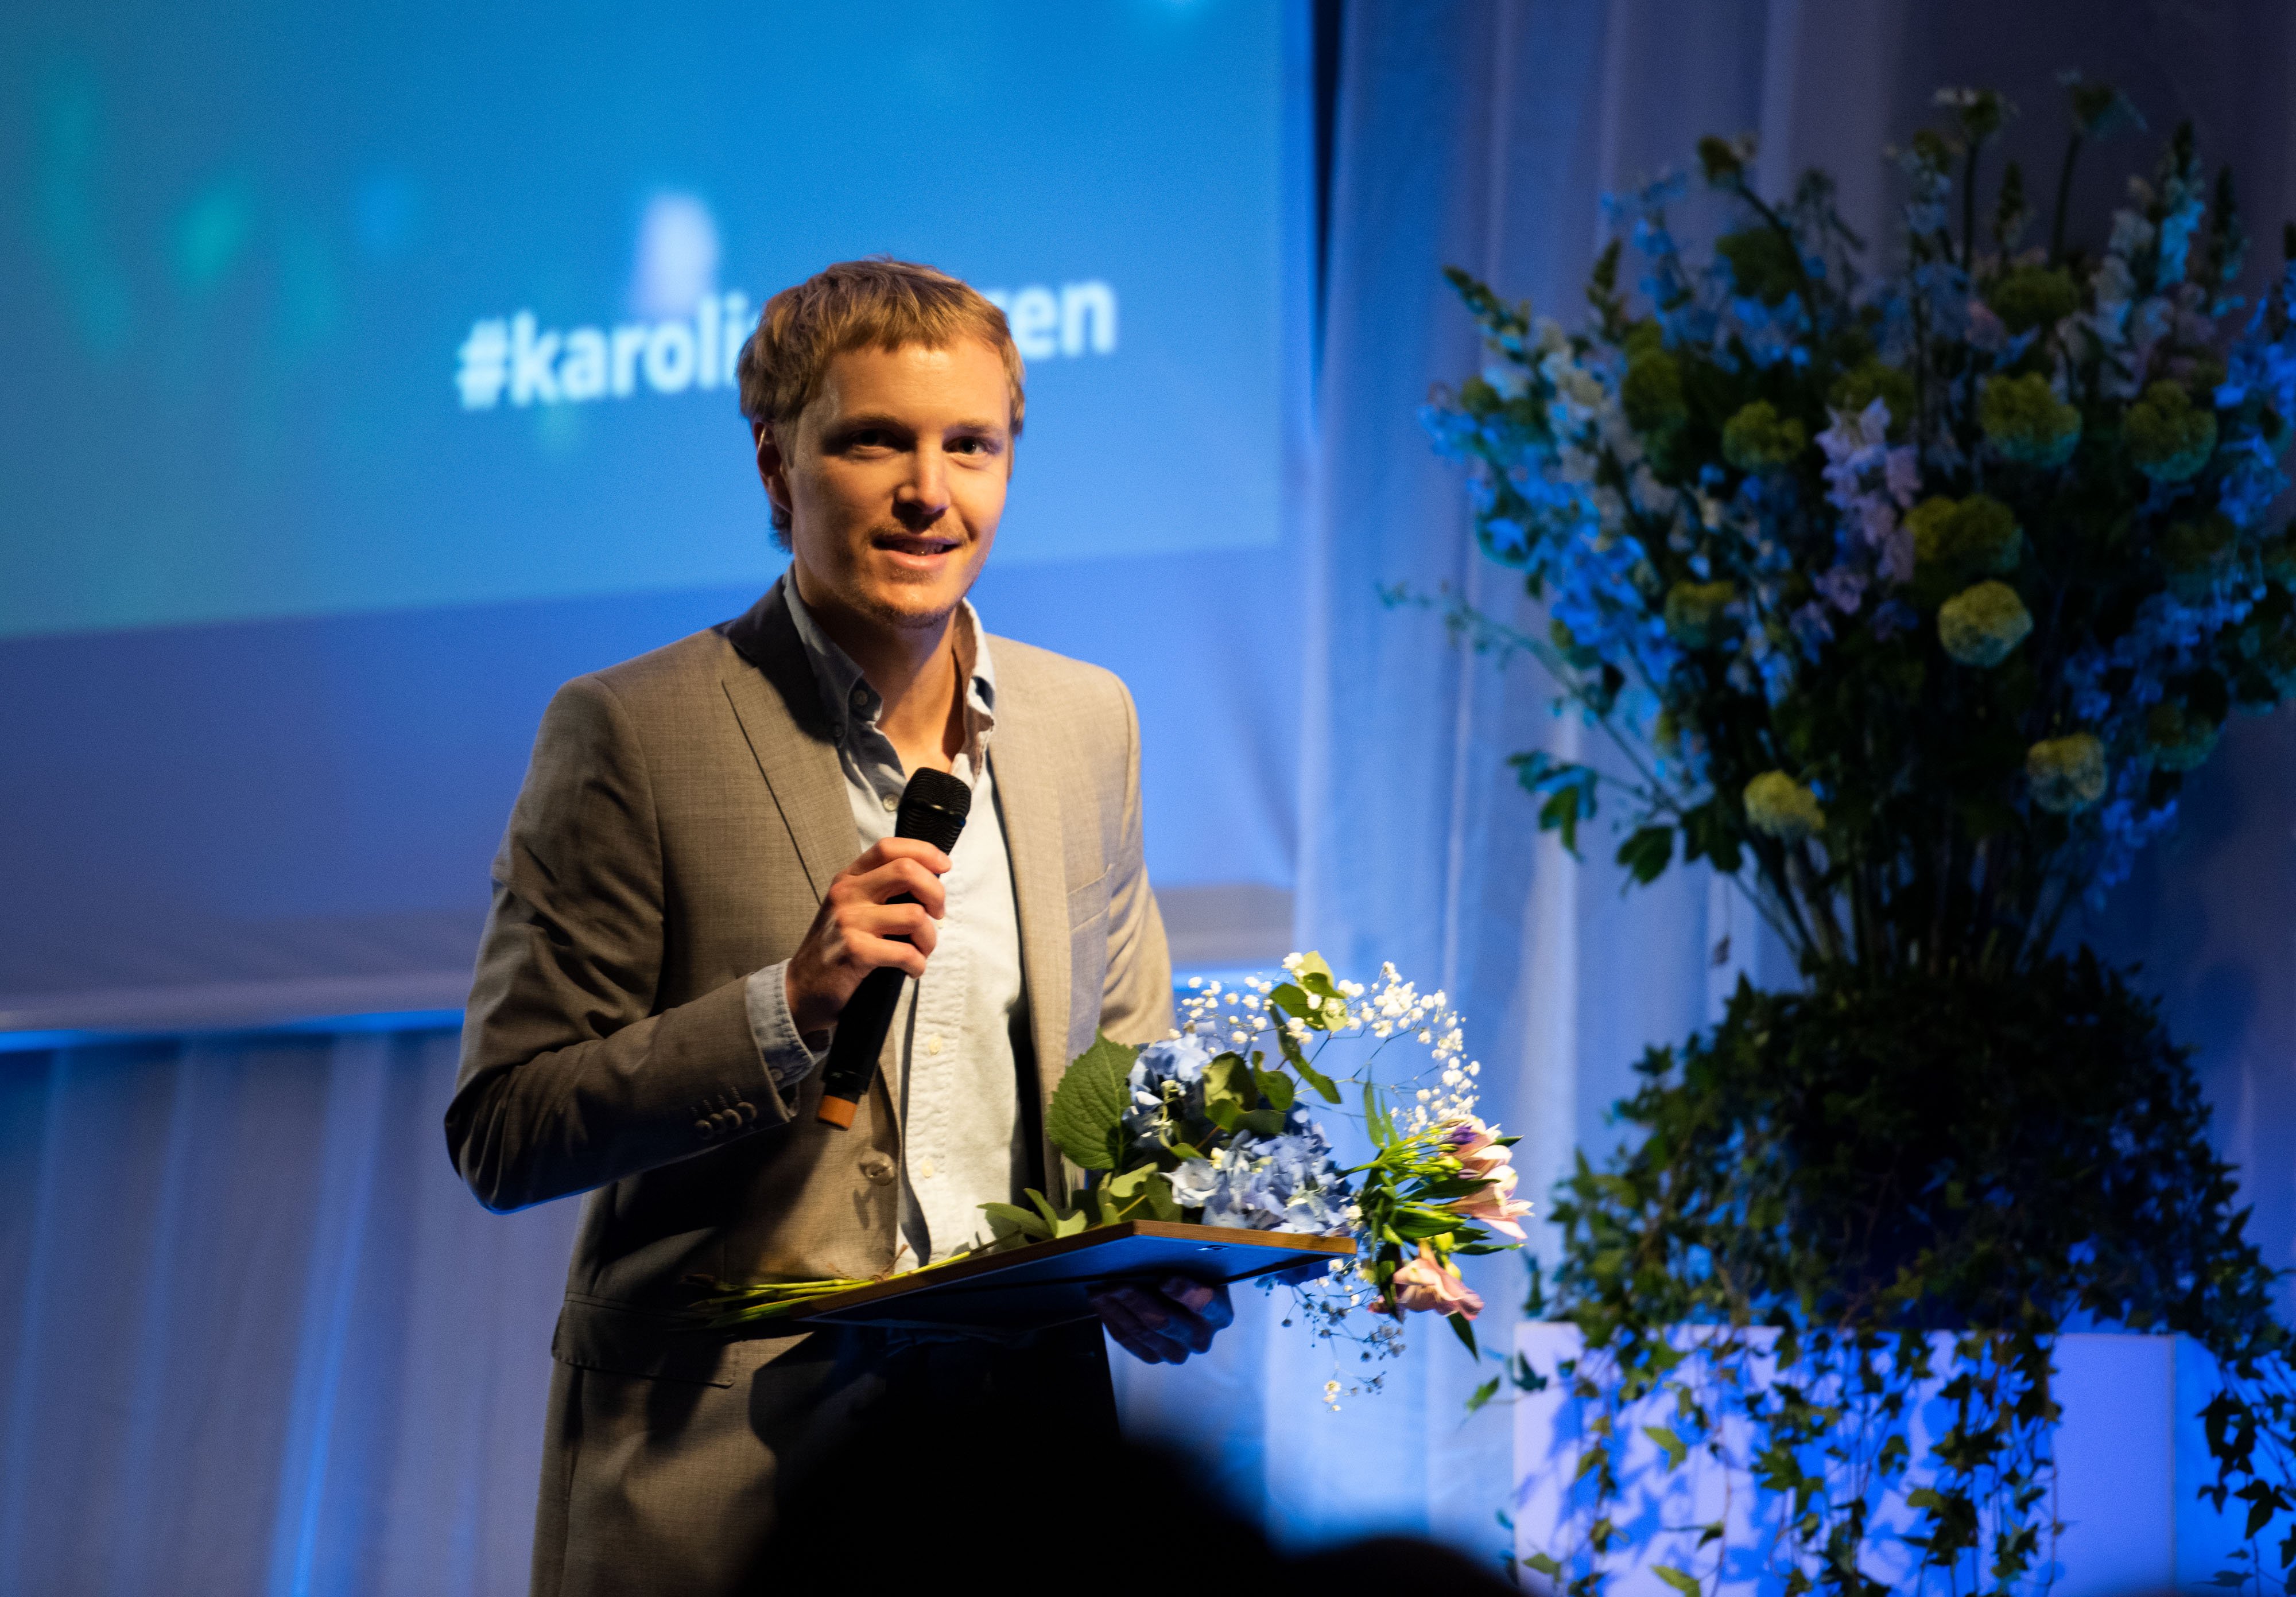 Magnus Dalén receives the Karolina Award 2019